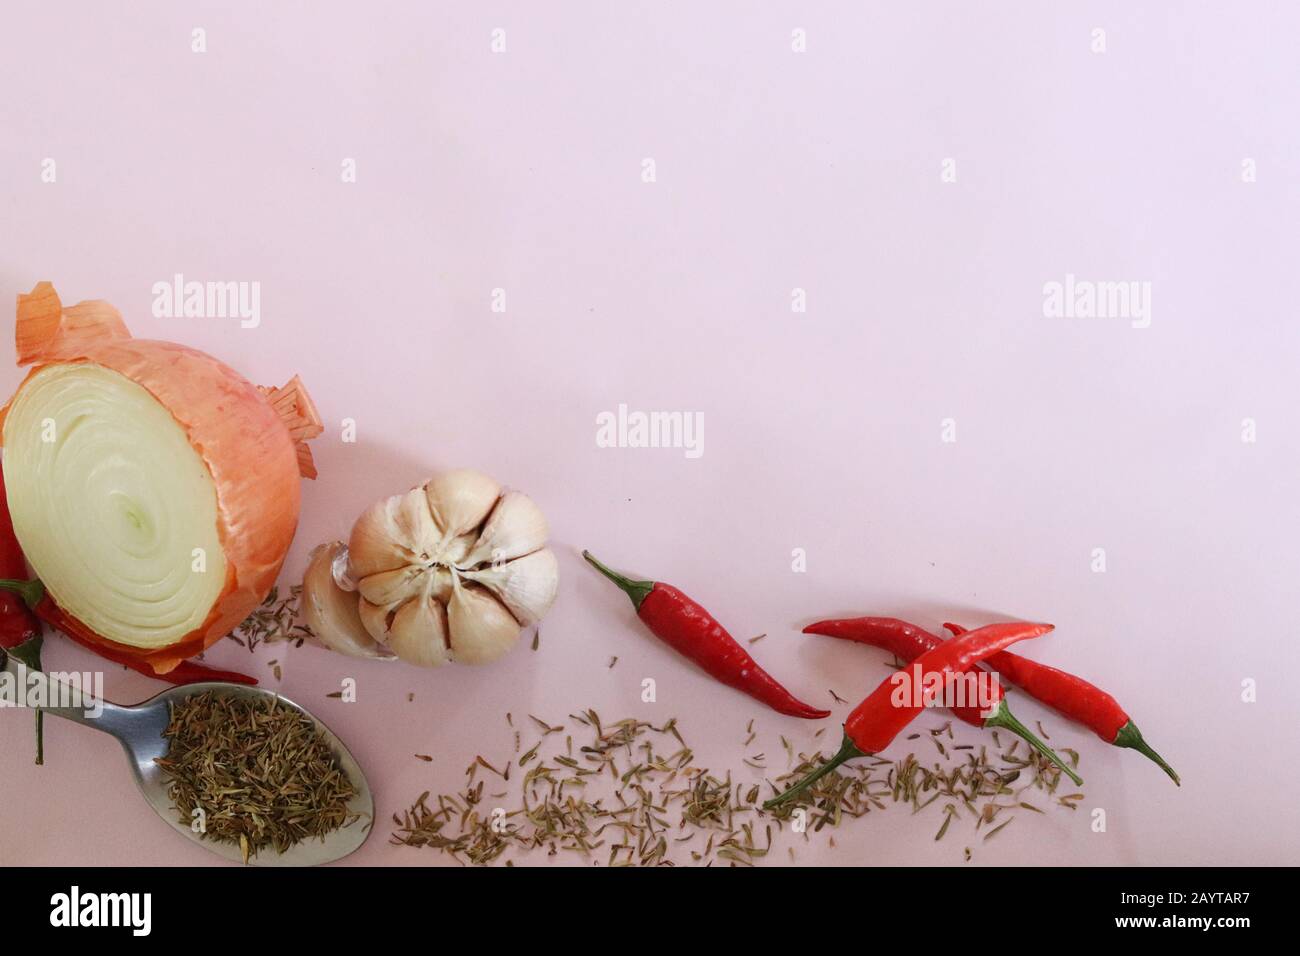 Hierbas y especias para cocinar sobre un fondo rosa para mostrar el concepto de gastronomía, cocina, cocina, preparación de alimentos y sabores Foto de stock